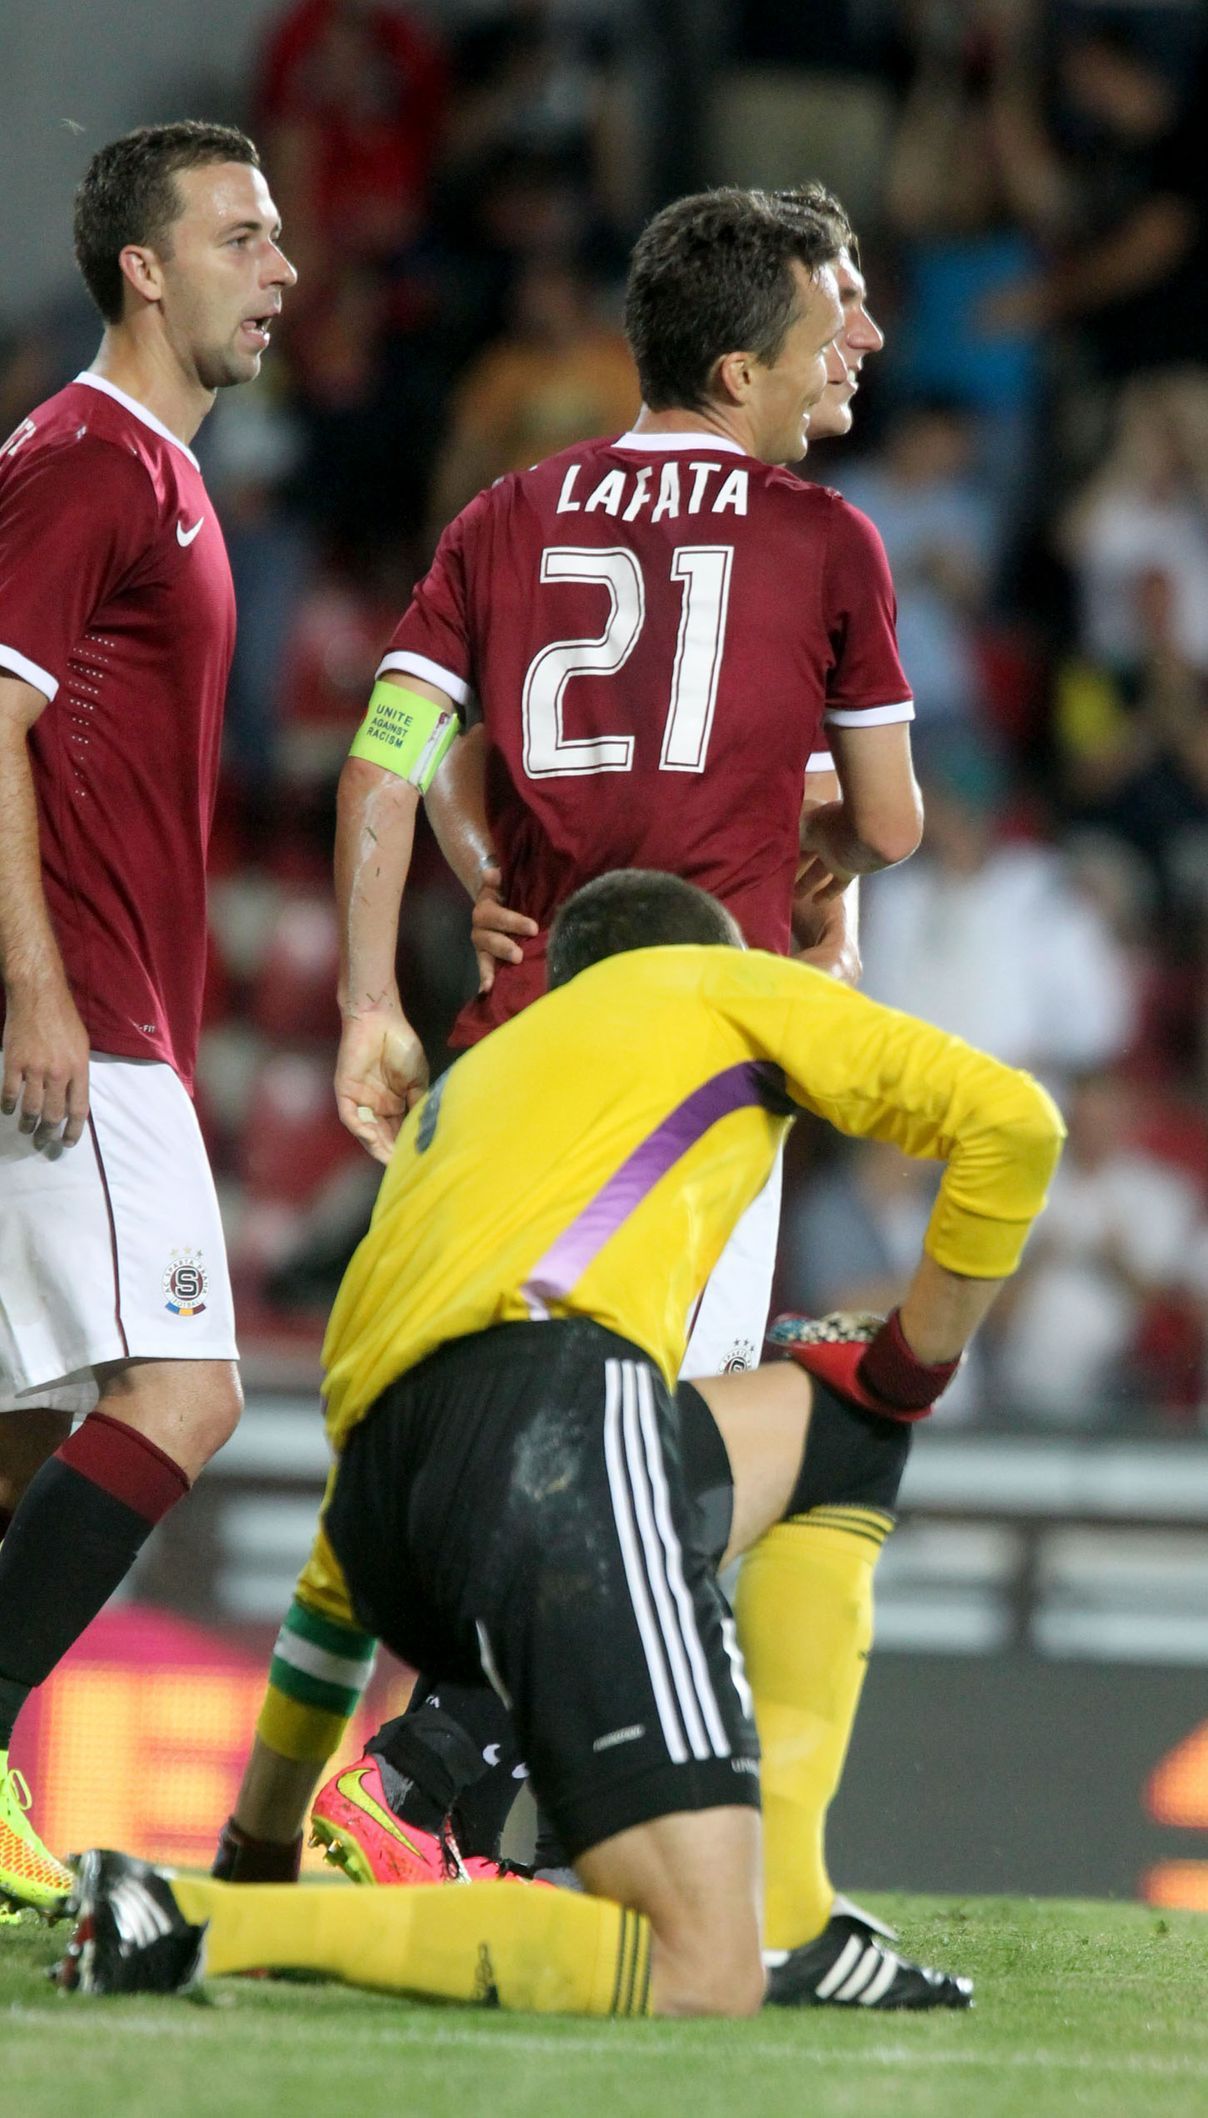 LM, Sparta-Tallin: David Lafata (21) slaví gól